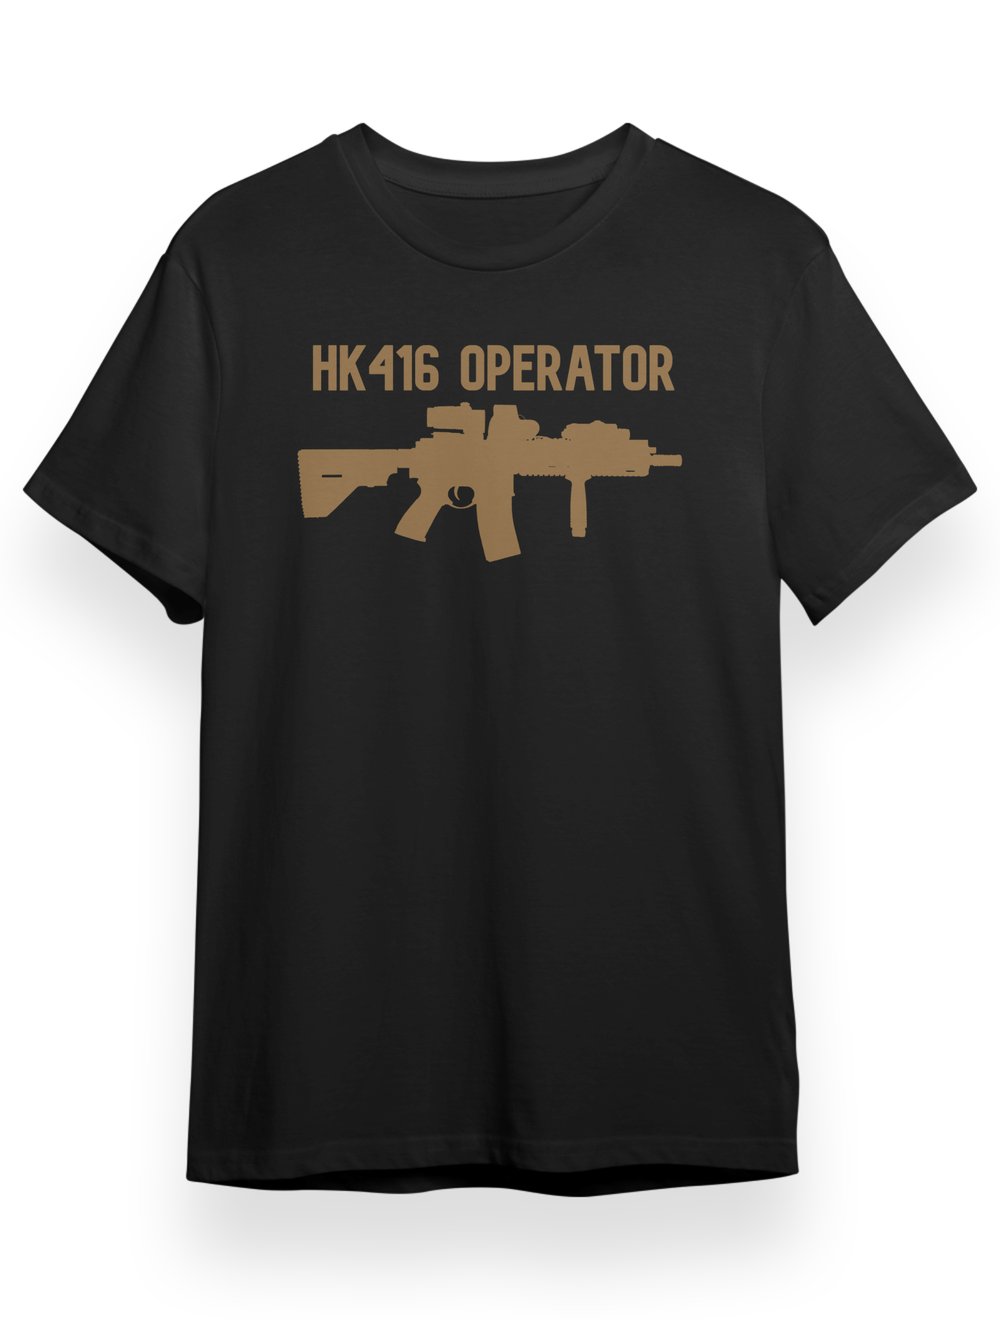 HK416 OPERATOR TAN